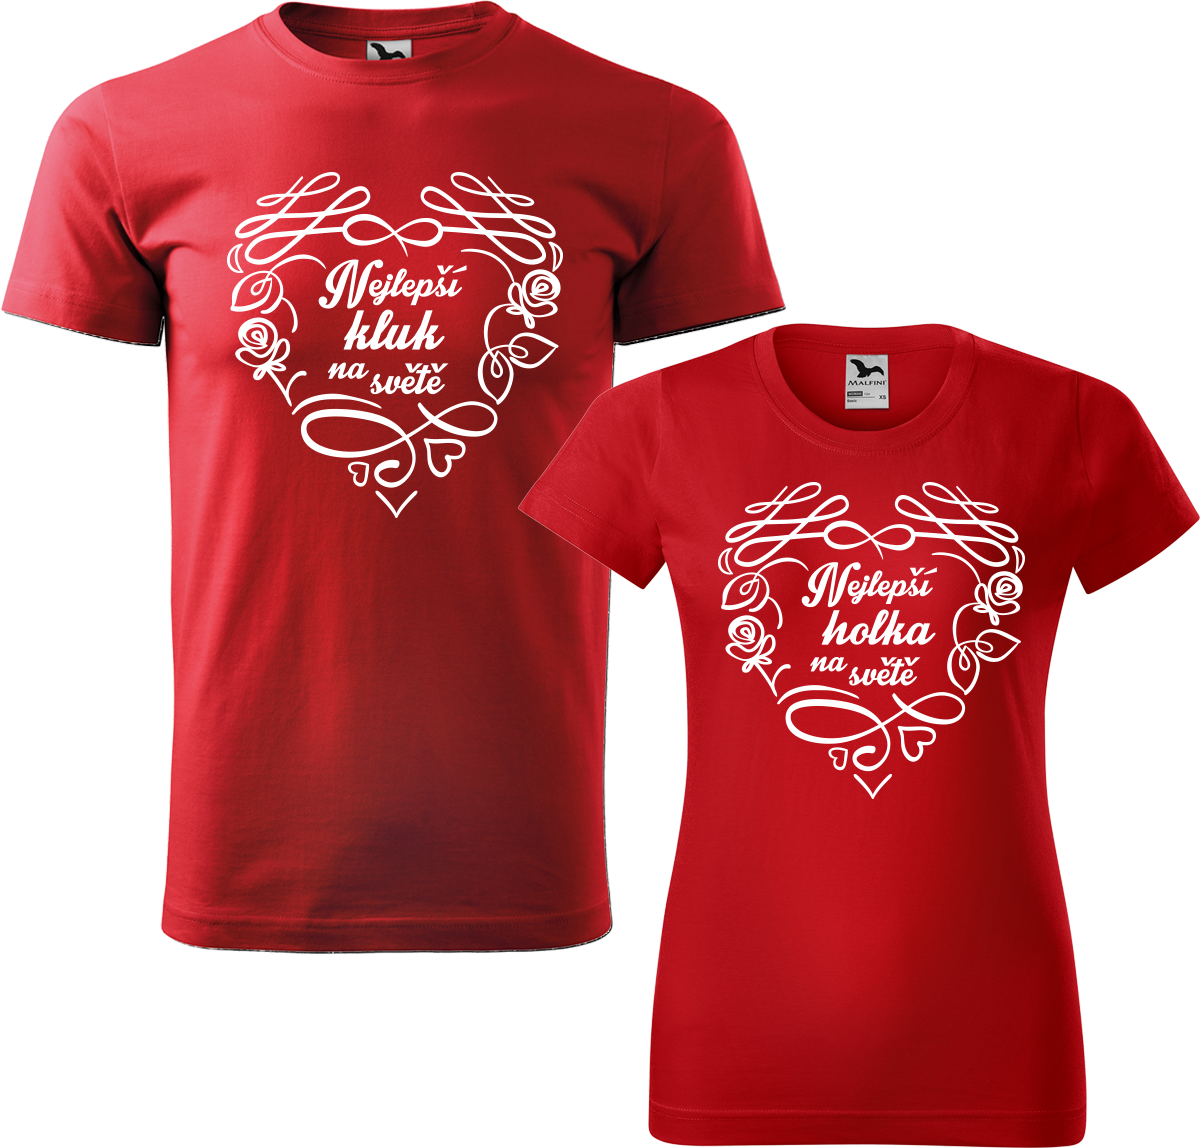 Trička pro páry - Nejlepší kluk / holka na světě Barva: Červená (07), Velikost dámské tričko: XL, Velikost pánské tričko: XL